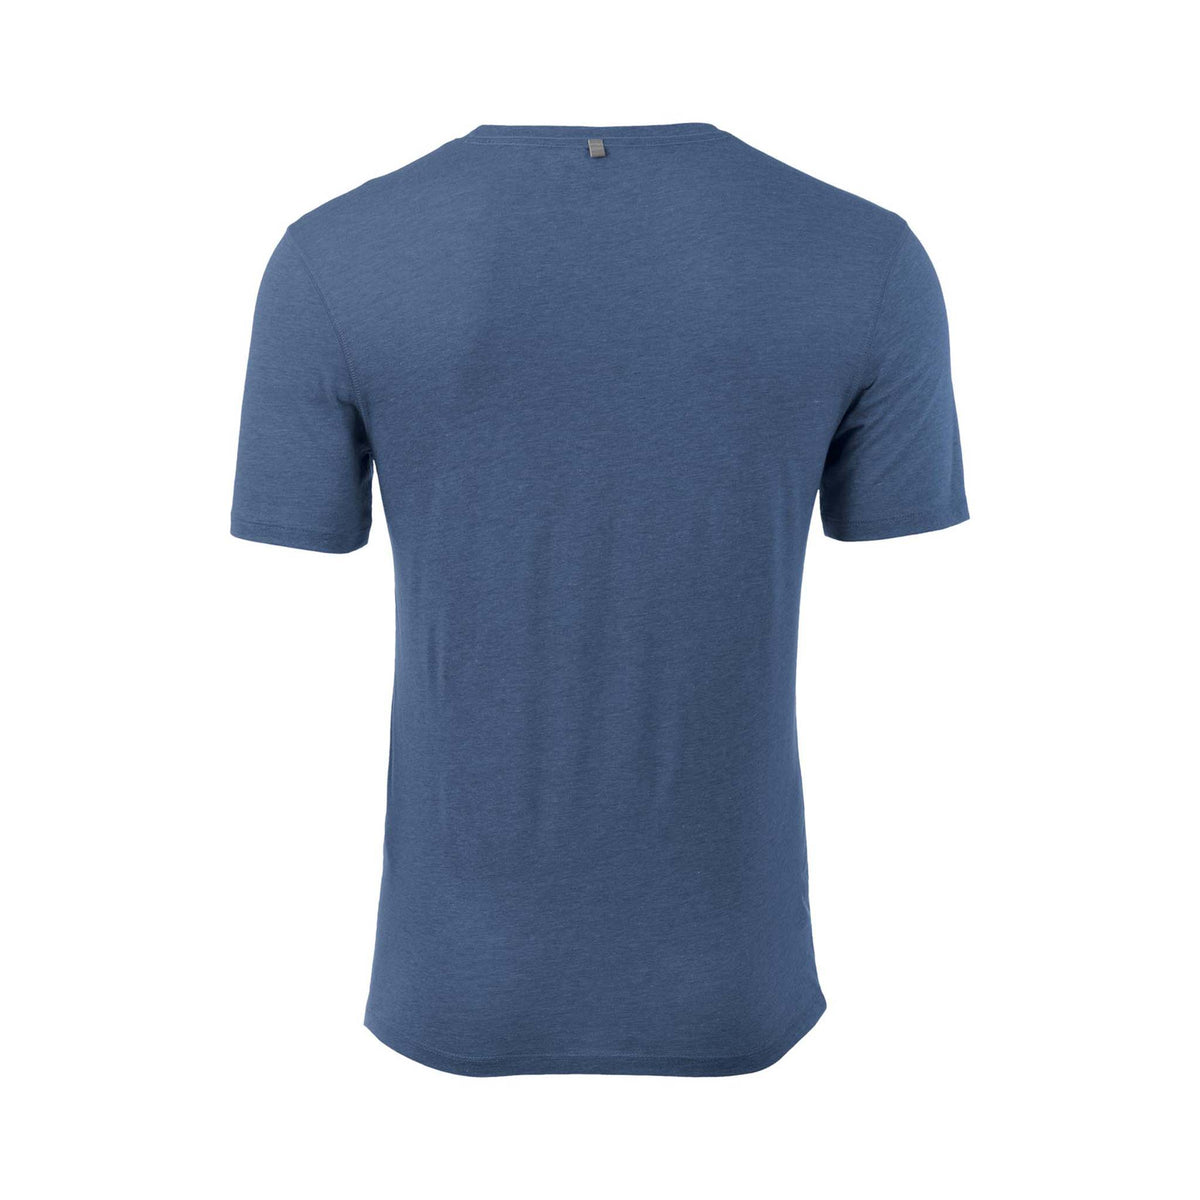 Mizuno Inspire T-shirt sport d&#39;entrainement manches courtes homme enseign blue dos